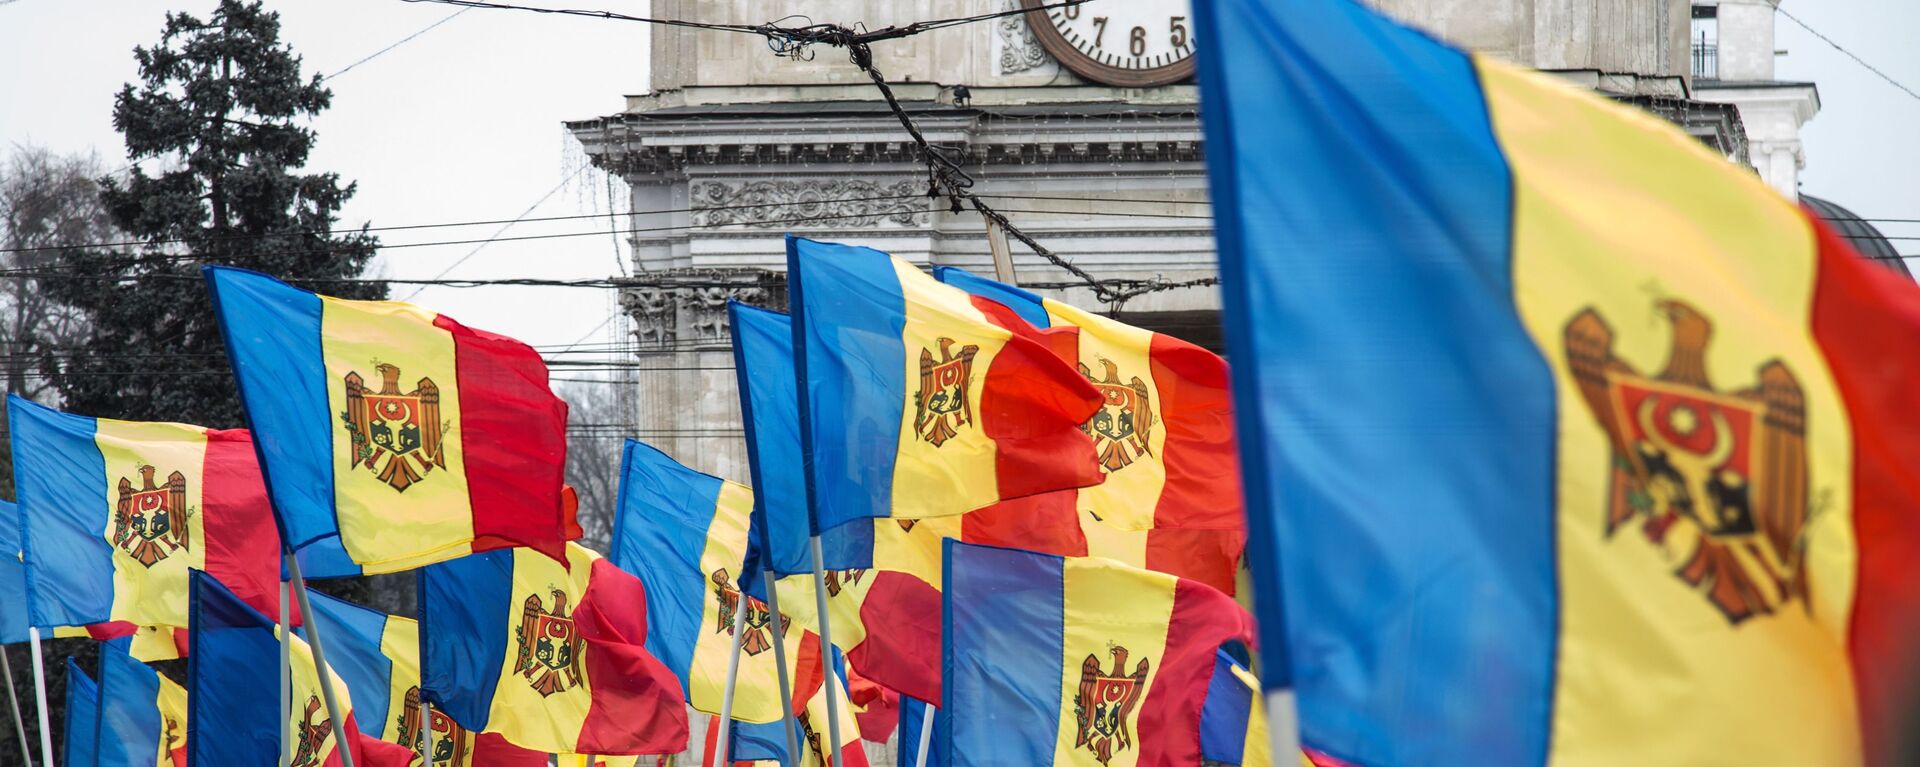 Moldavske zastave na protestu opozicije u Kišinjevu - Sputnik Srbija, 1920, 25.03.2018